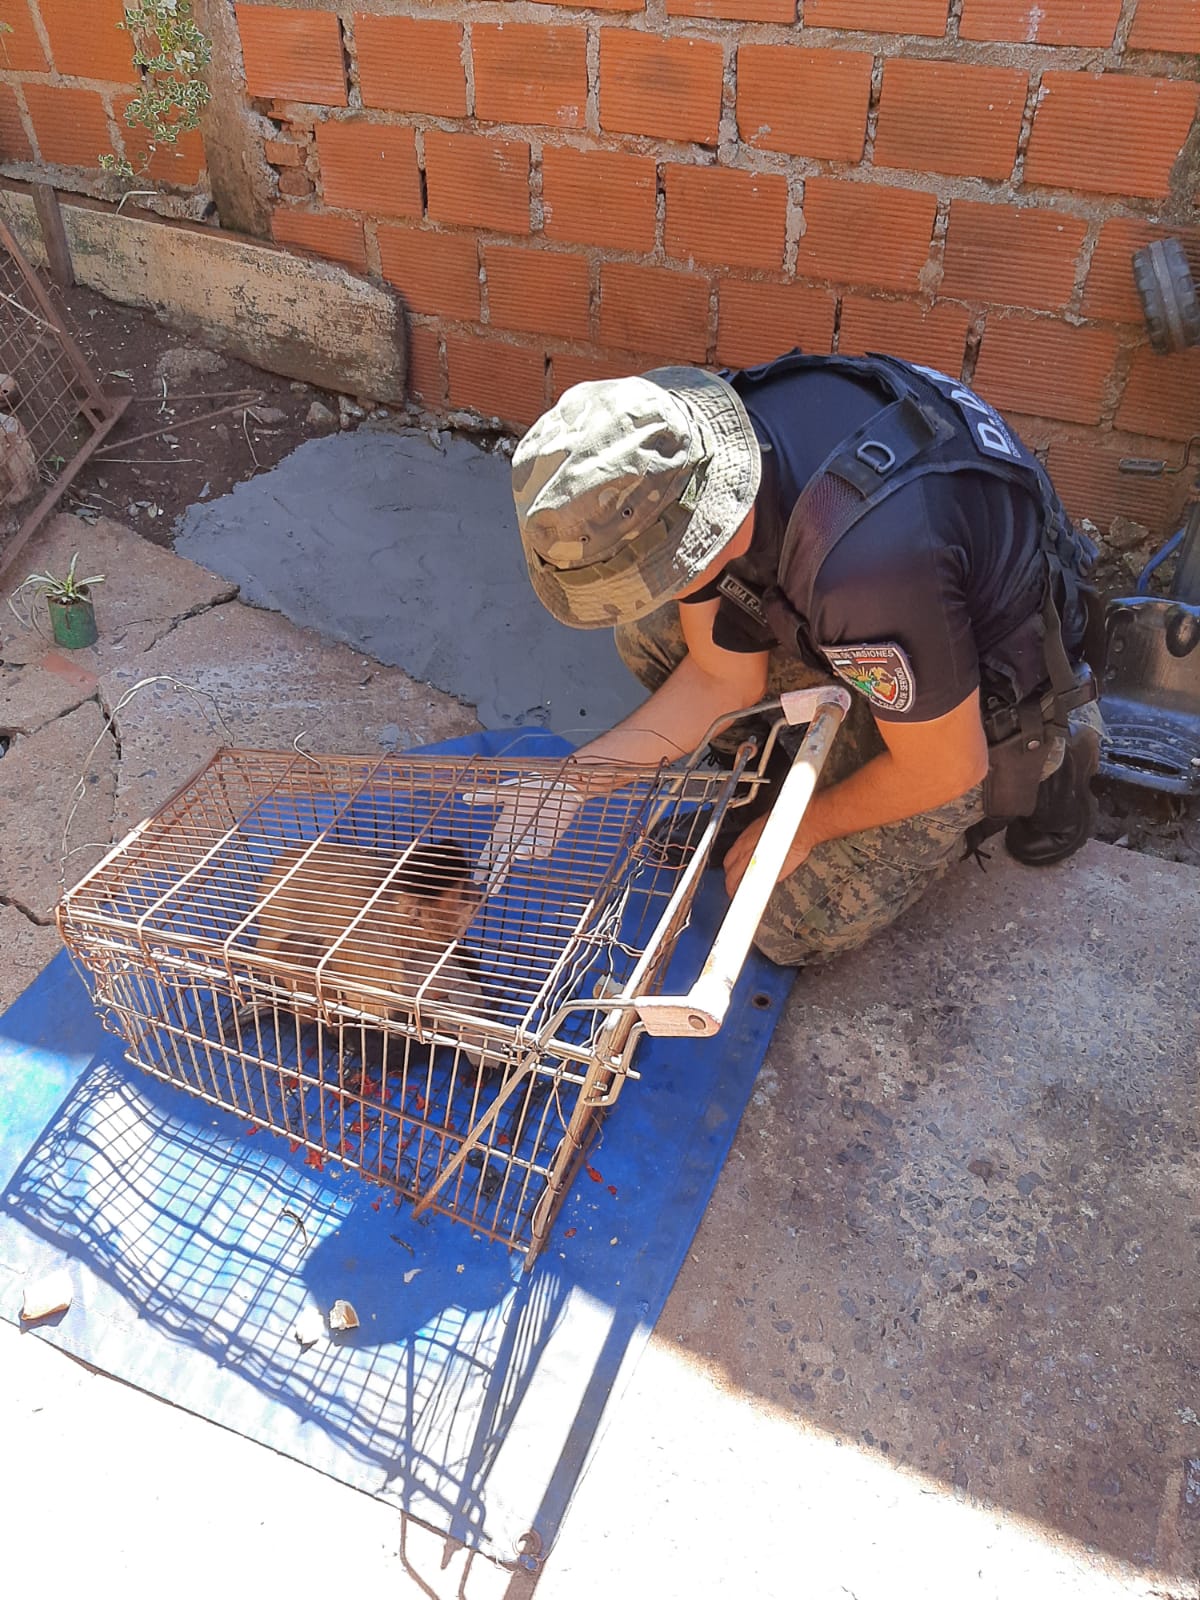 Policías rescataron animales silvestres en cautiverios y mascotas que se encontraban en peligro imagen-4